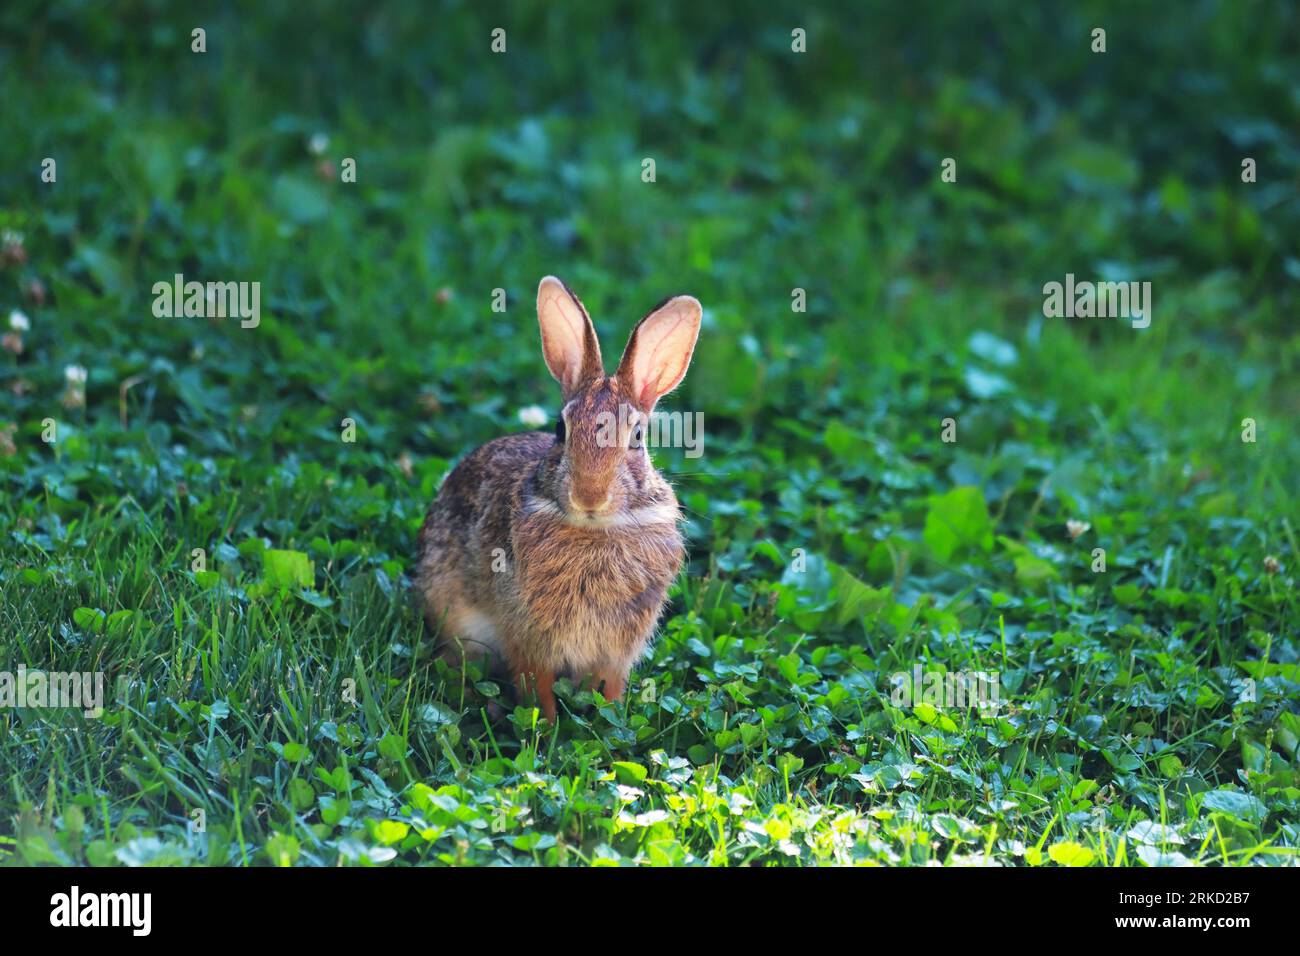 Tir moyen d'un lapin à queue de coton dans une cour herbeuse. Banque D'Images